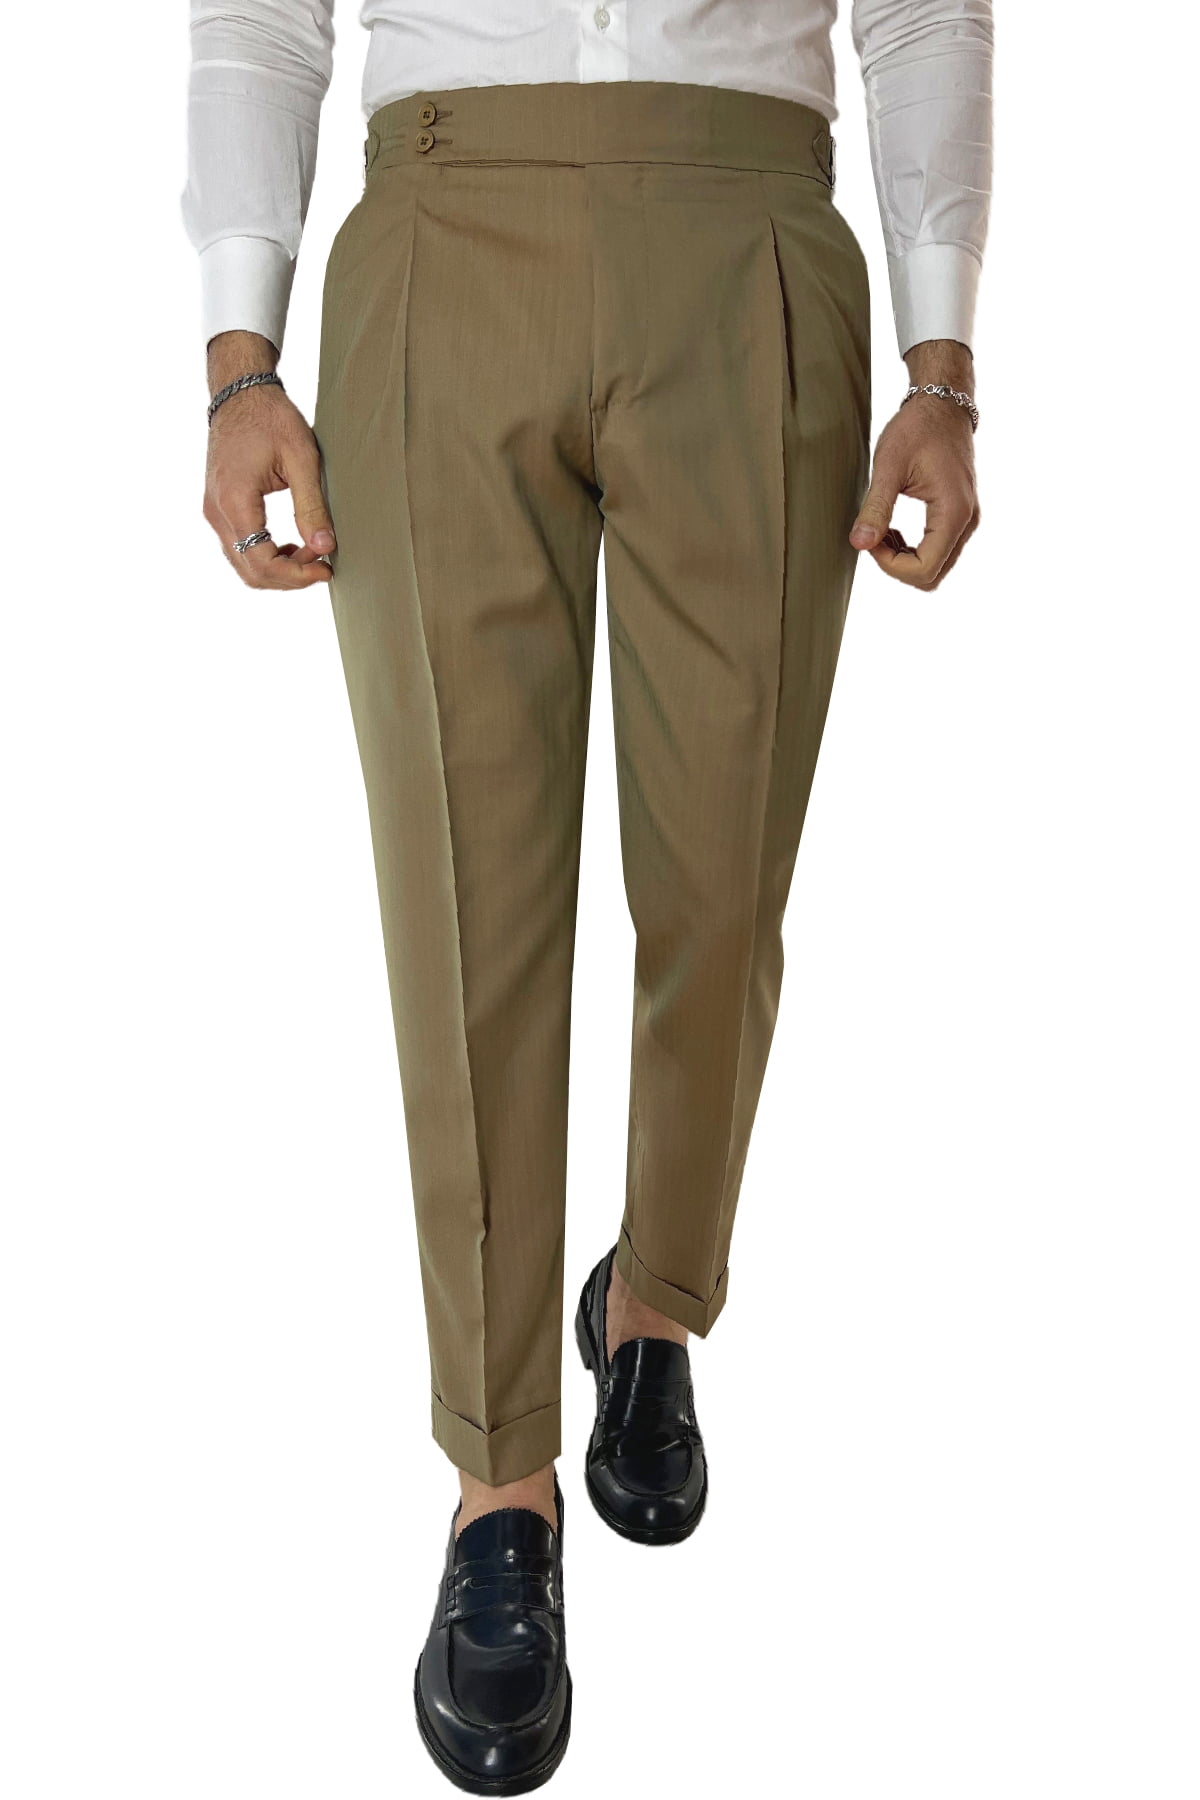 Pantalone uomo Fango Solaro in fresco lana e seta Holland & Sherry vita alta con pinces fibbie laterali e risvolto 4cm